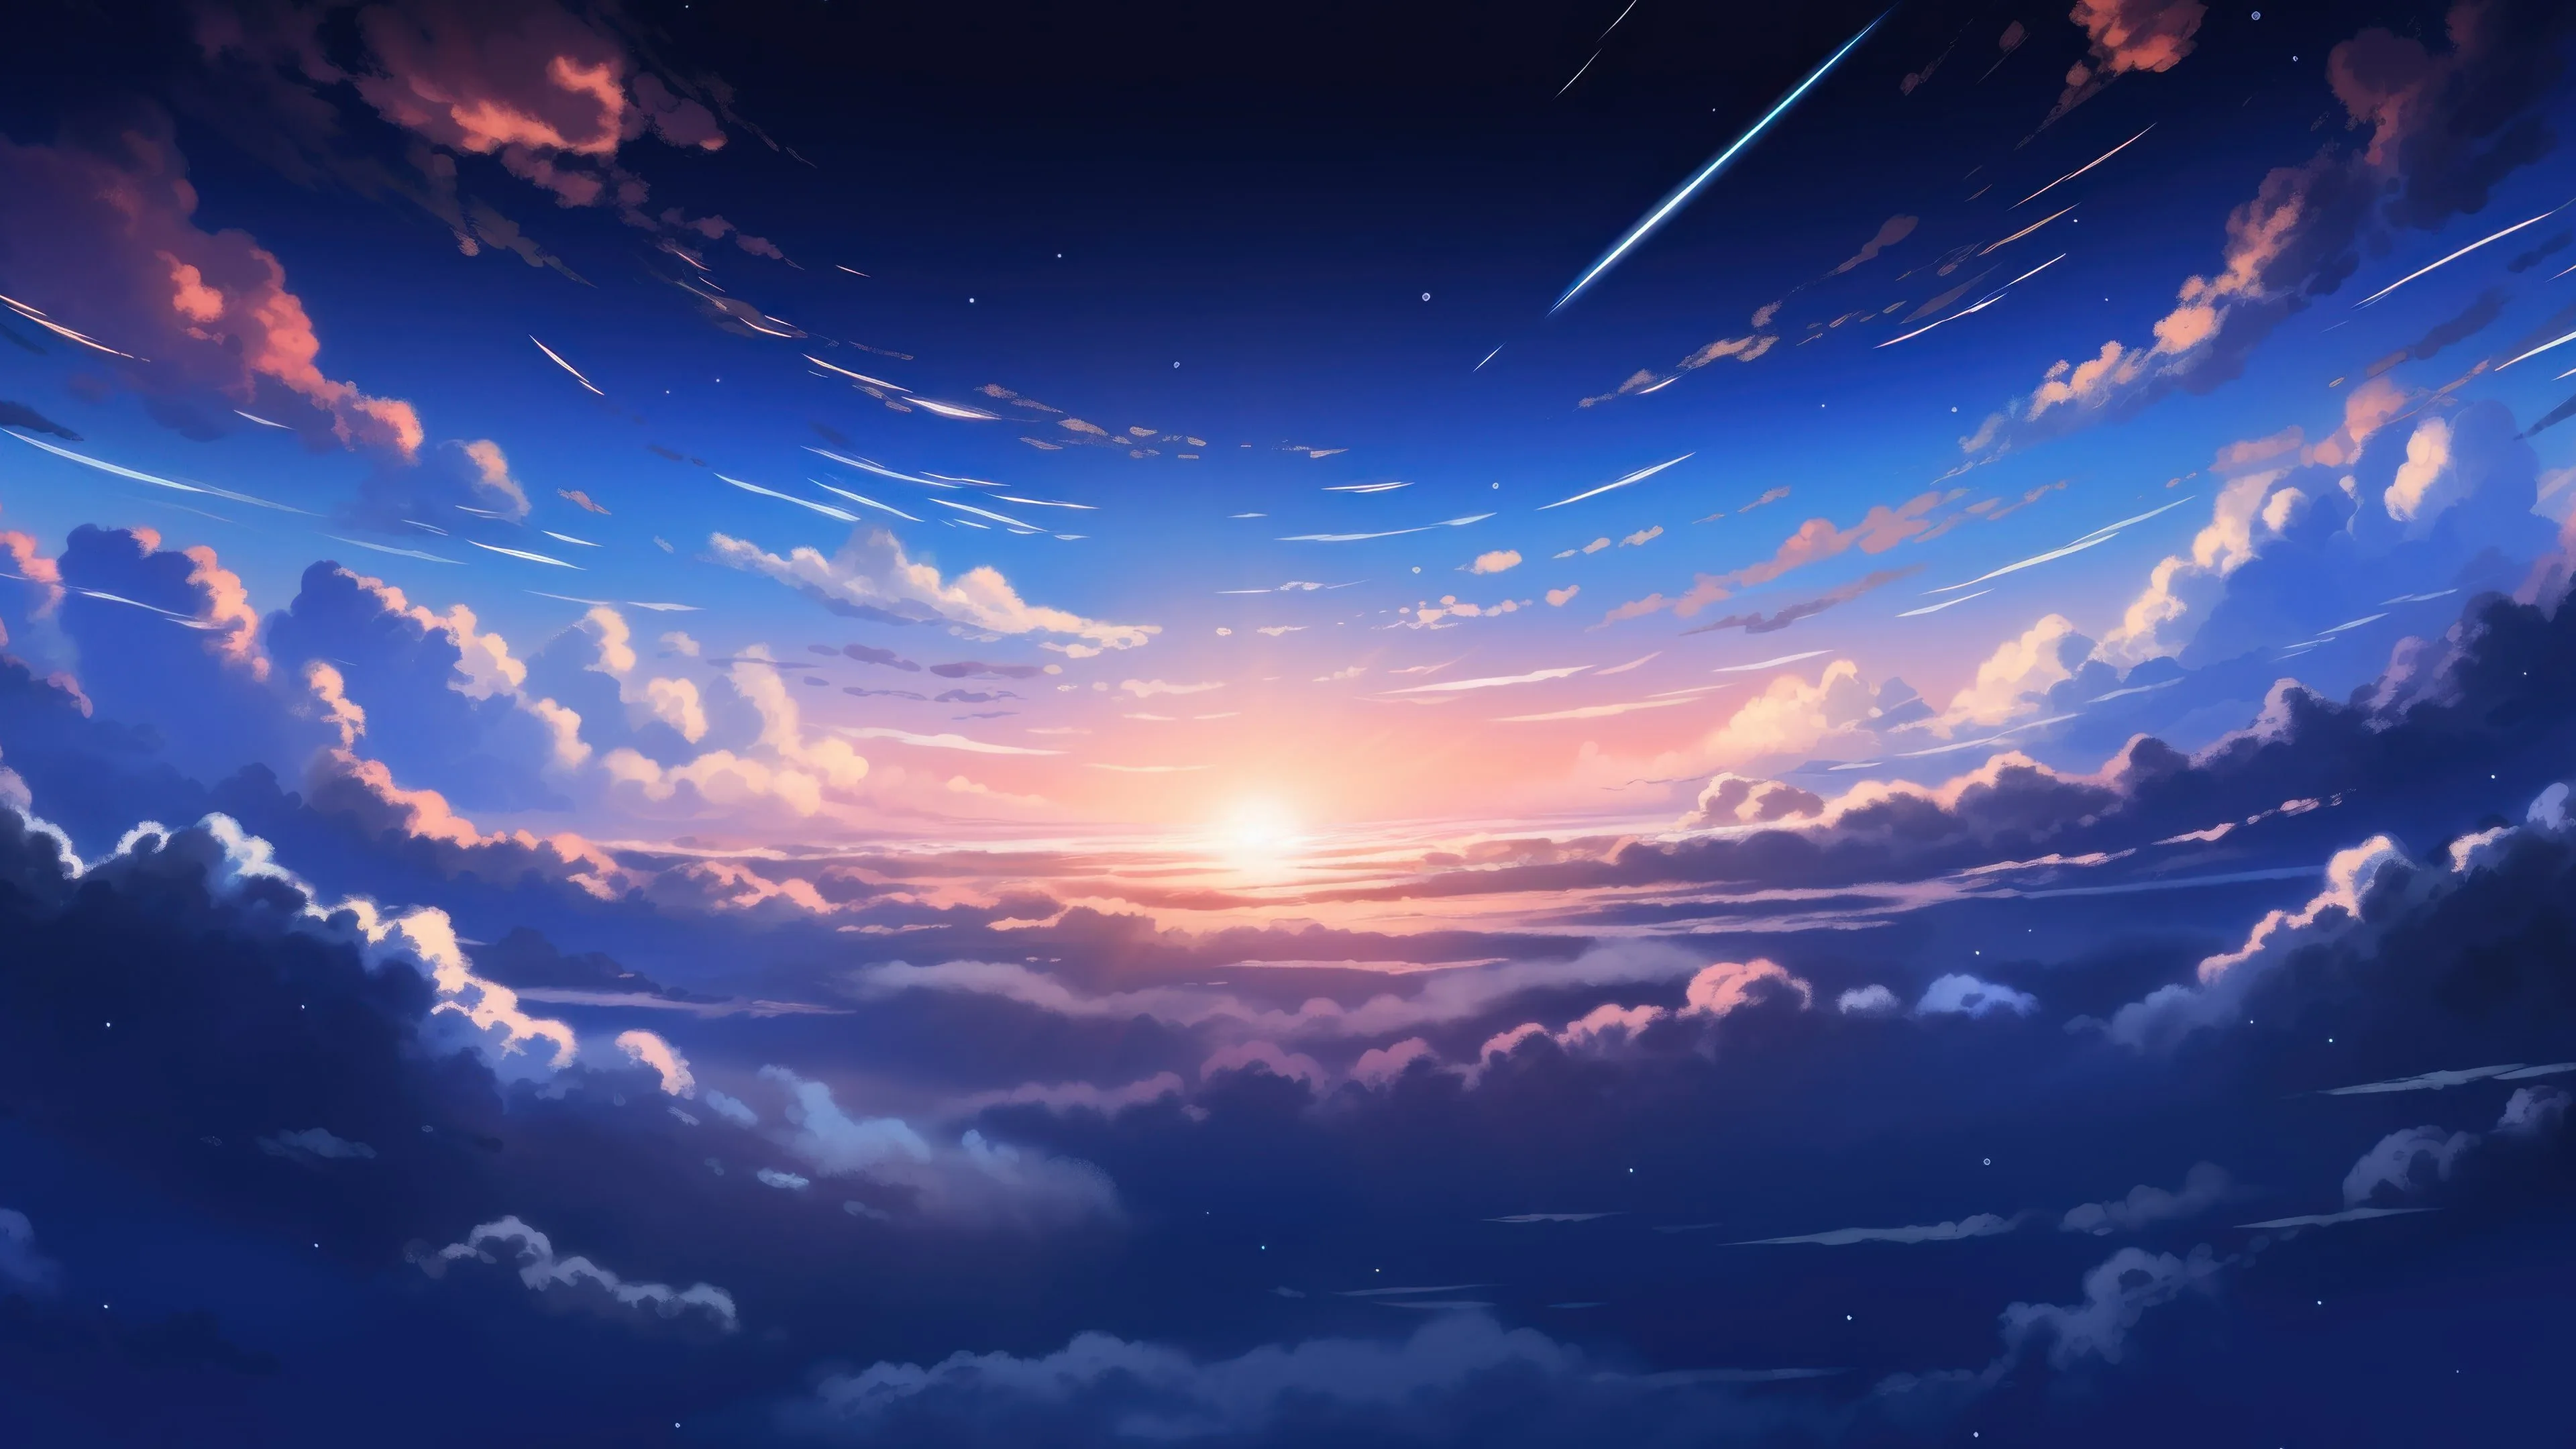 Aesthetic Anime City Sunset GIF | GIFDB.com